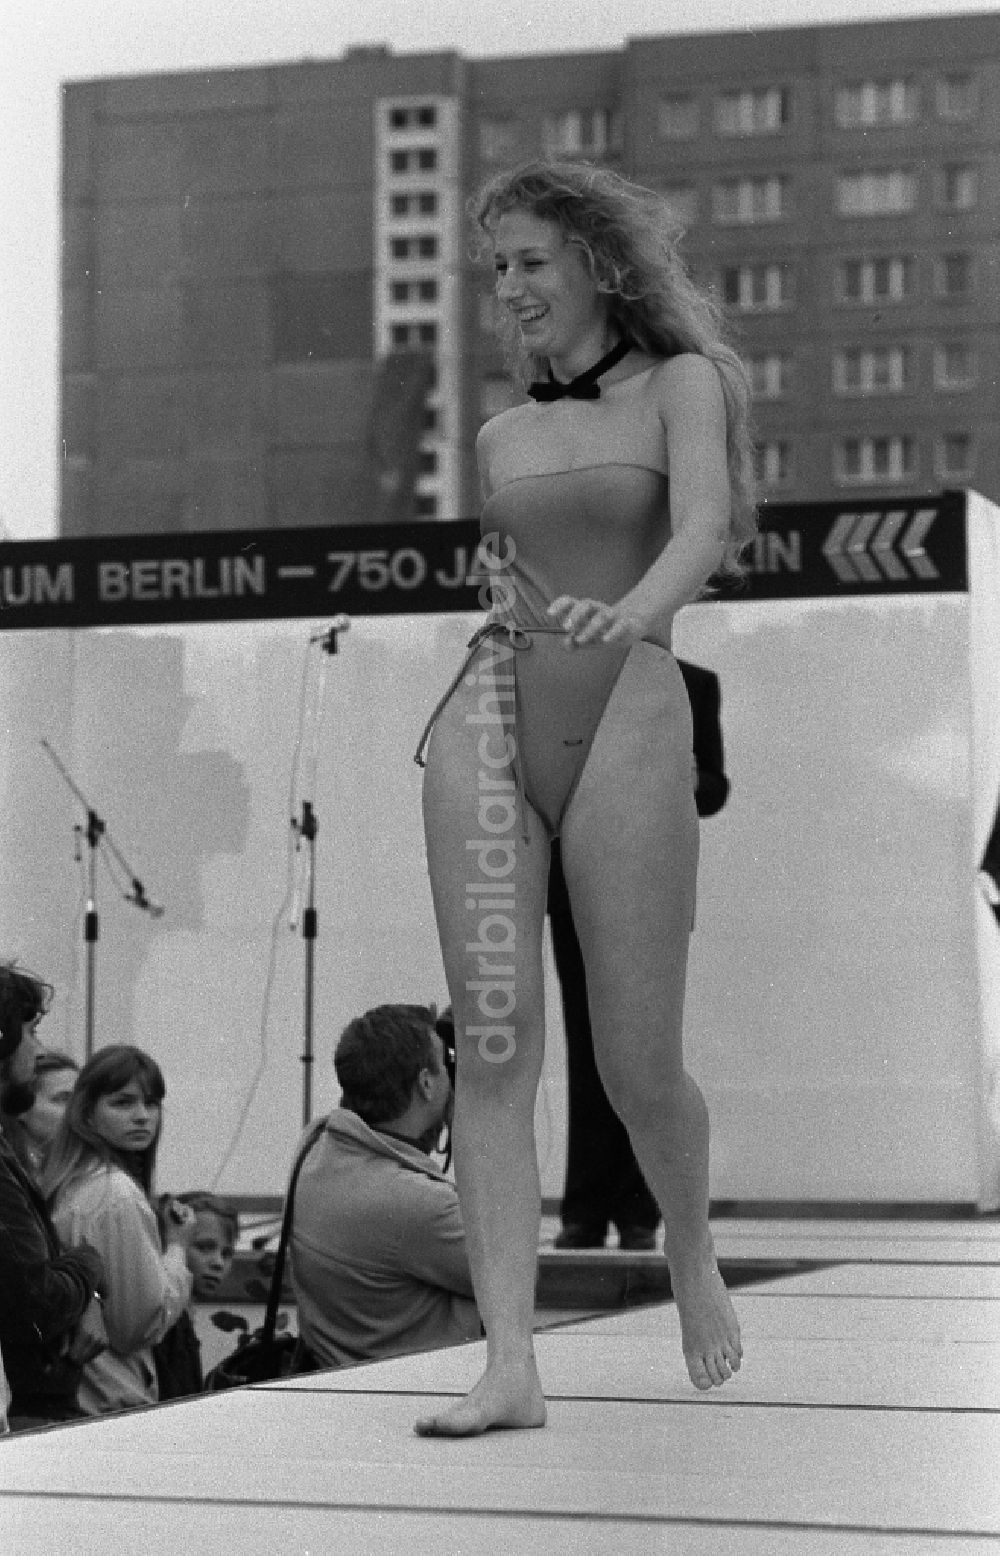 DDR-Bildarchiv: Berlin - Veranstaltung Wahl Miss Frühling im Ortsteil Marzahn in Berlin in der DDR